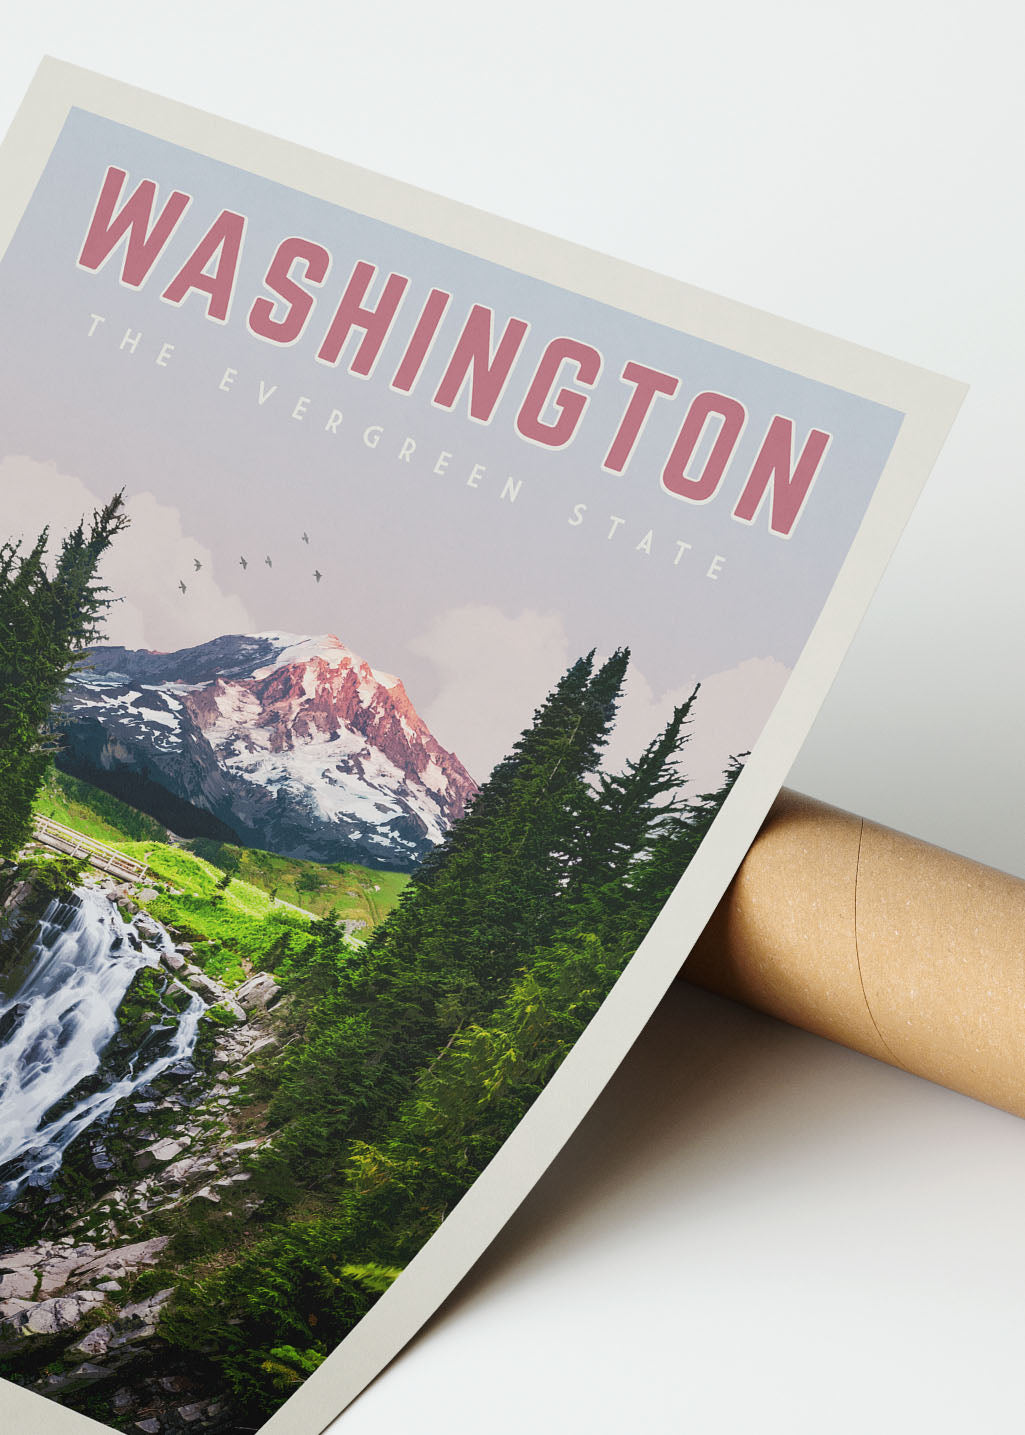 Washington State - Vintage Travel Poster